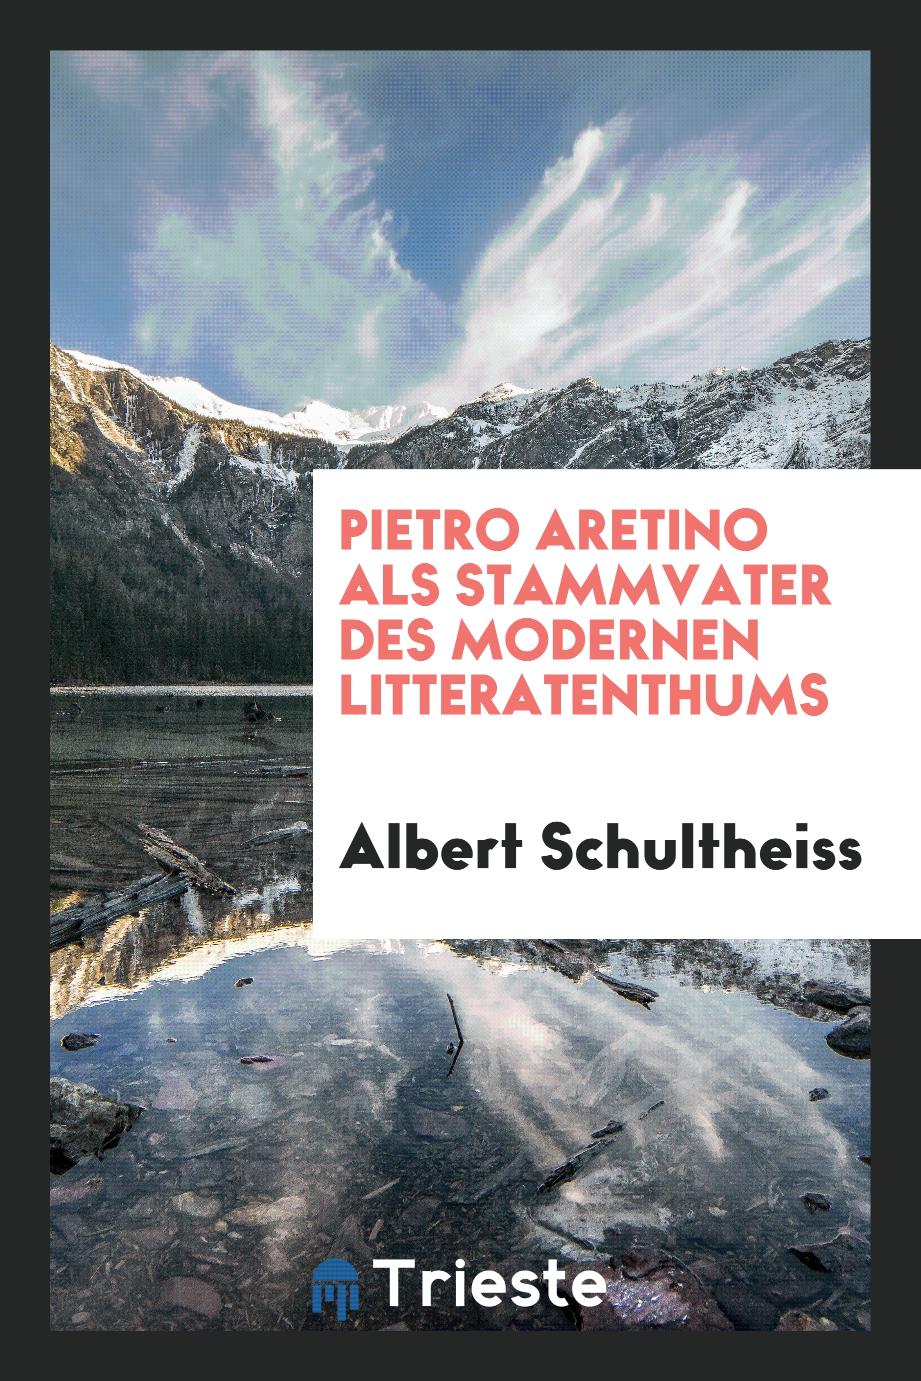 Pietro Aretino als Stammvater des modernen Litteratenthums